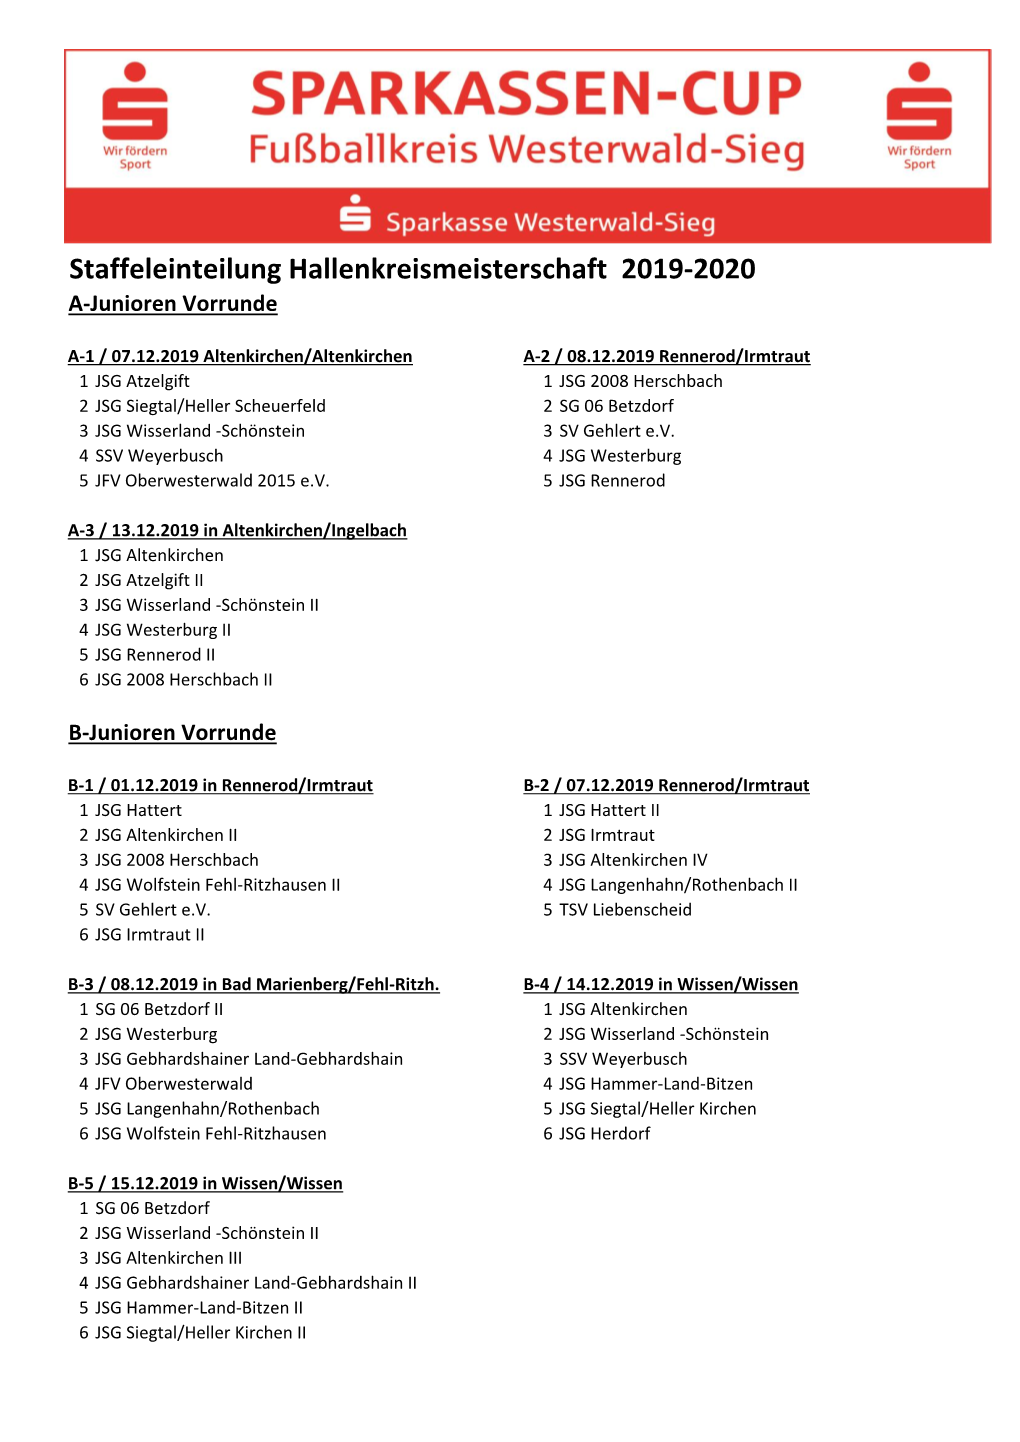 Staffeleinteilung Hallenkreismeisterschaft 2019-2020 A-Junioren Vorrunde